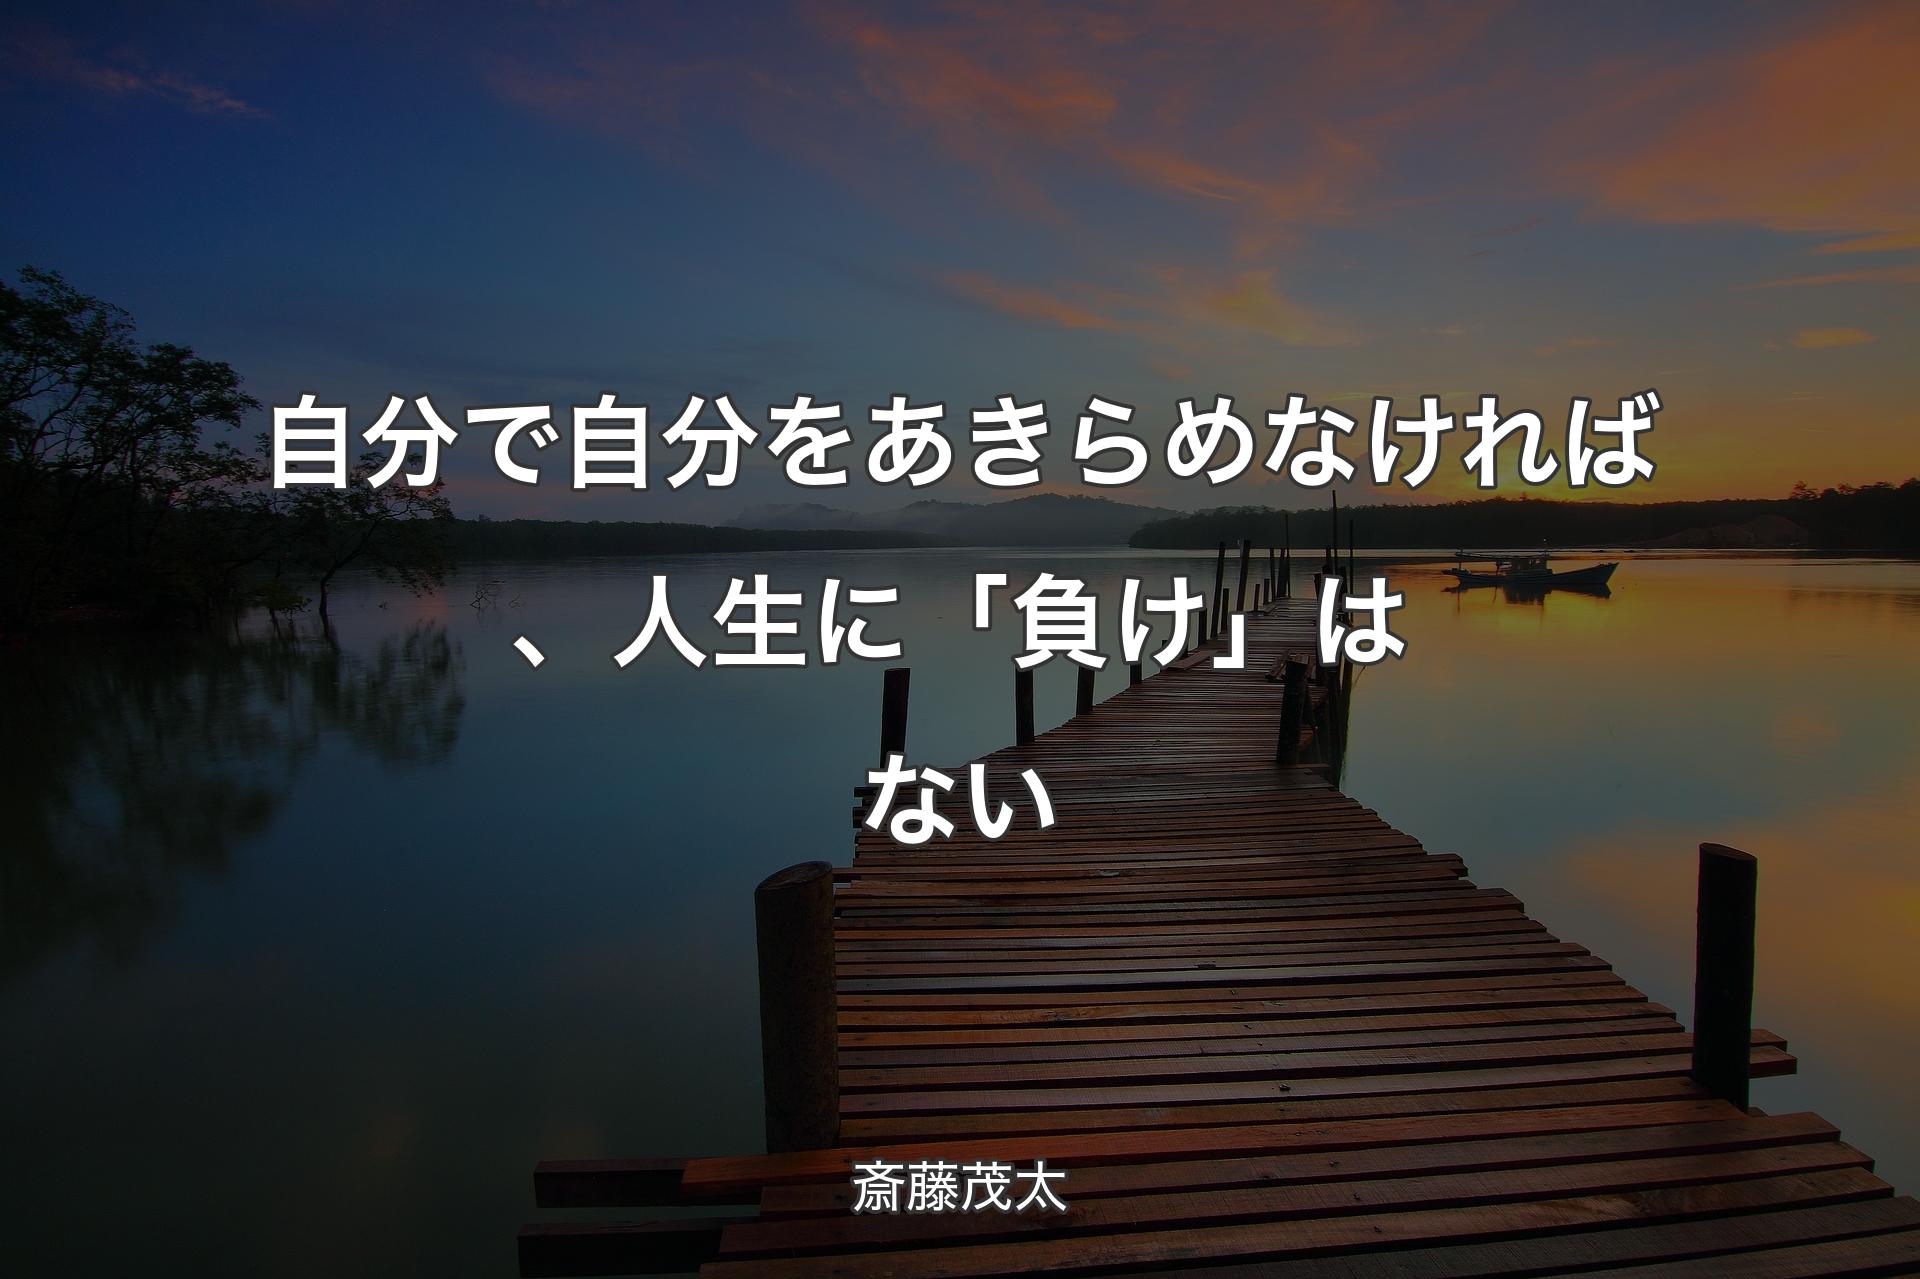 【背景3】自分で自分をあきらめなければ、人生に「負け」はない - 斎藤茂太